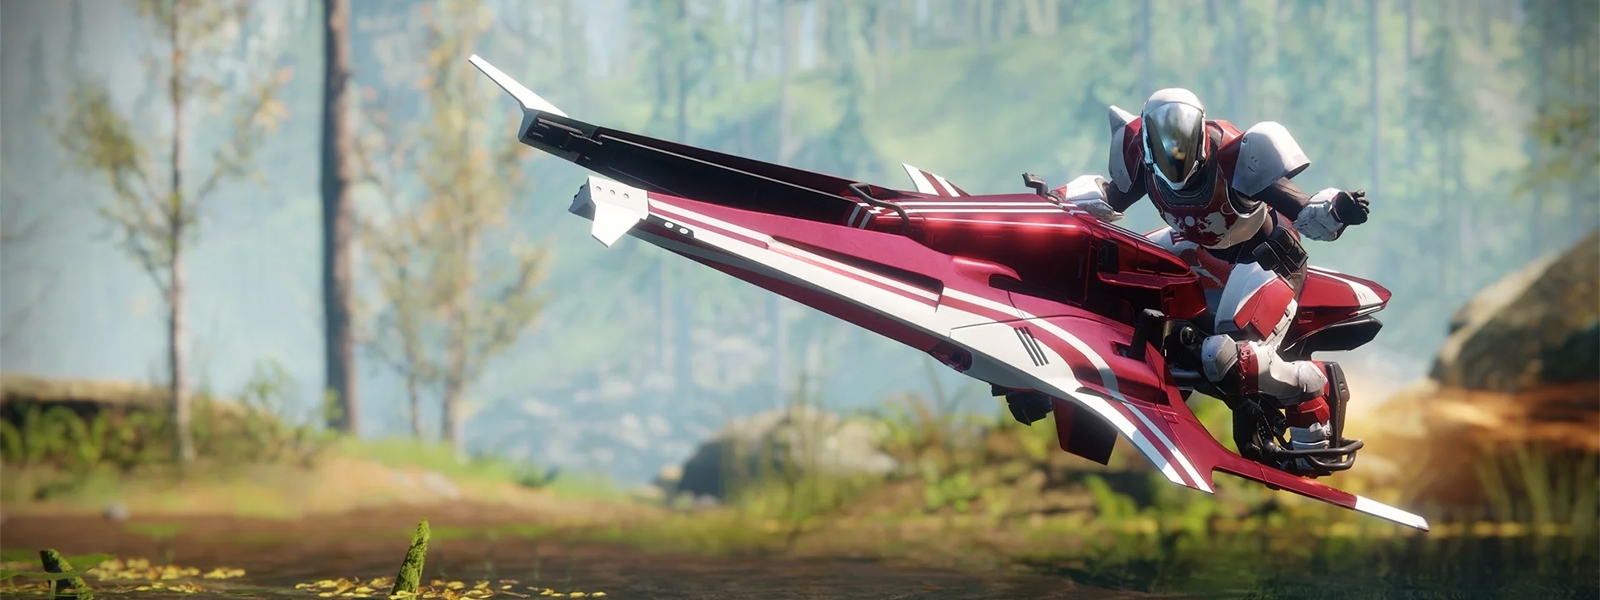 Destiny 2: как получить летающий мотоцикл и новый корабль?